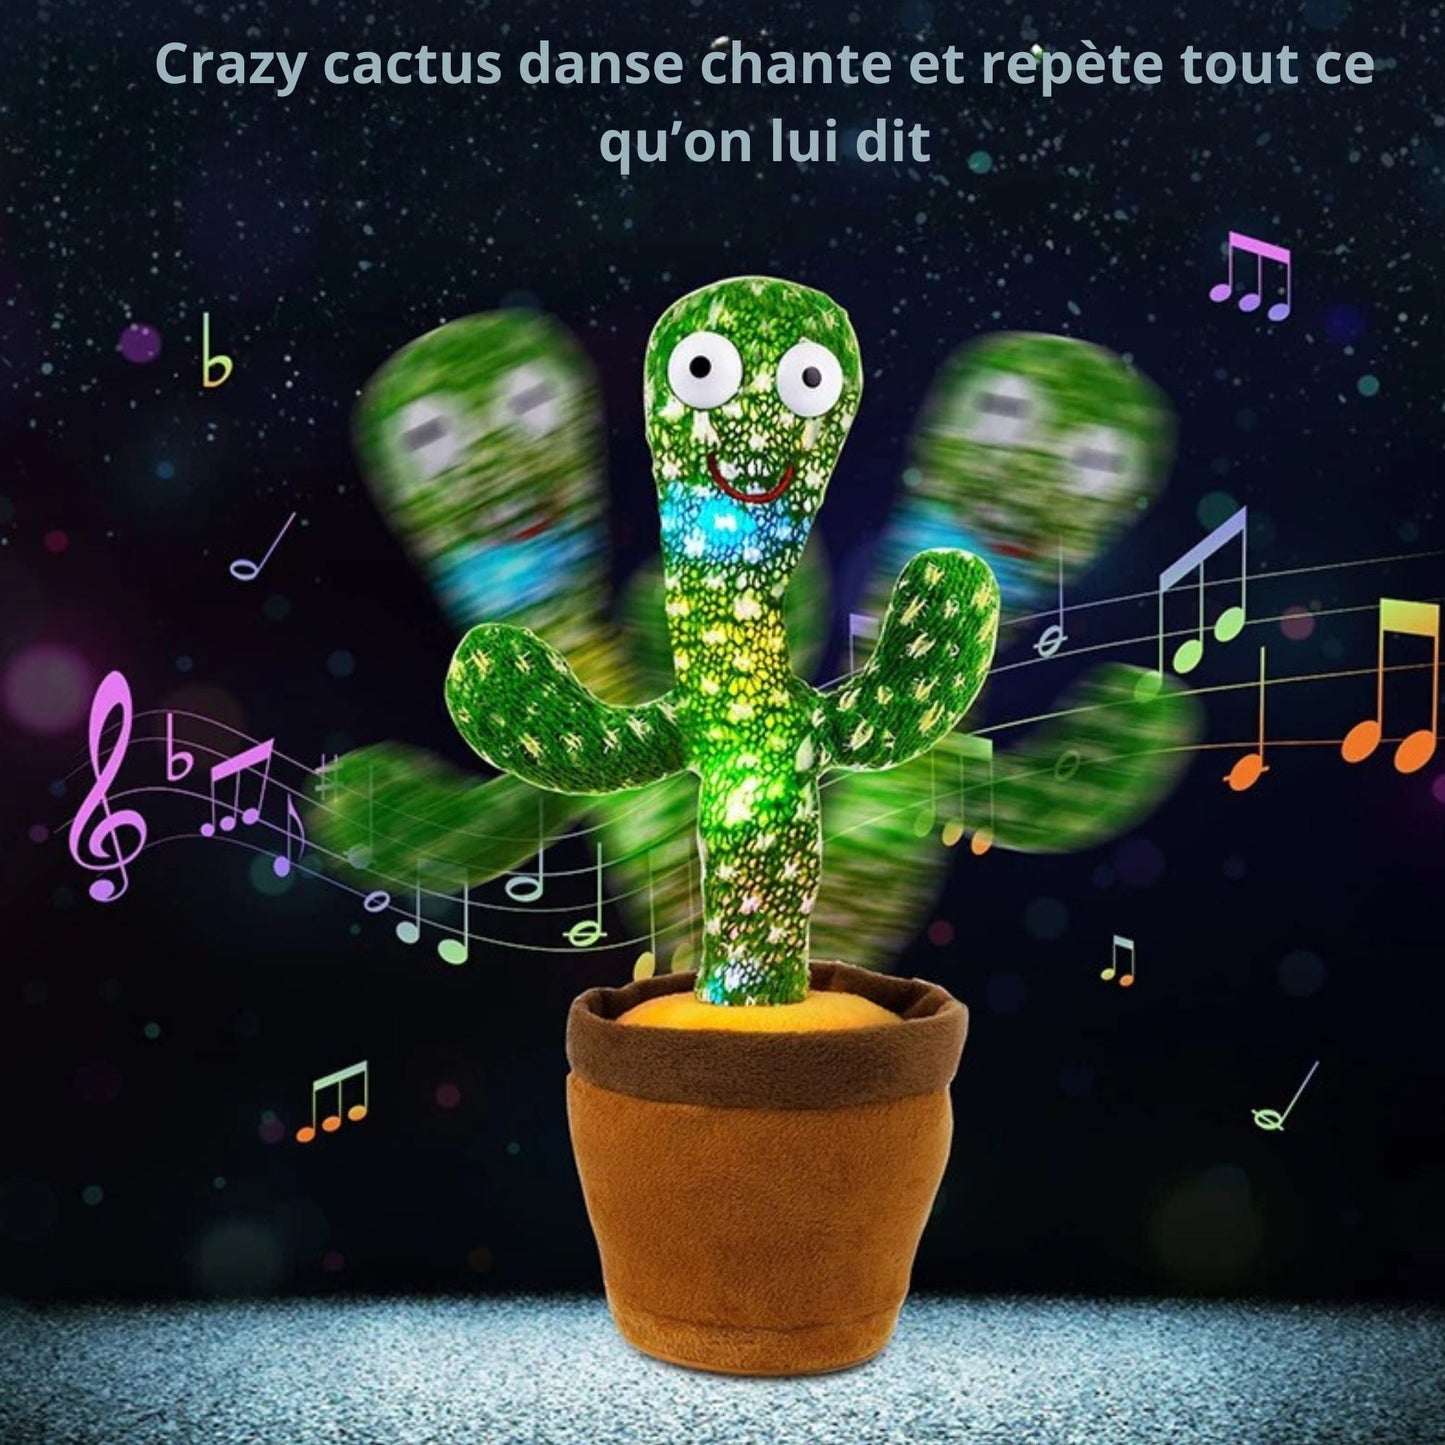 Crazy cactus™-Cactus interactif et musicale